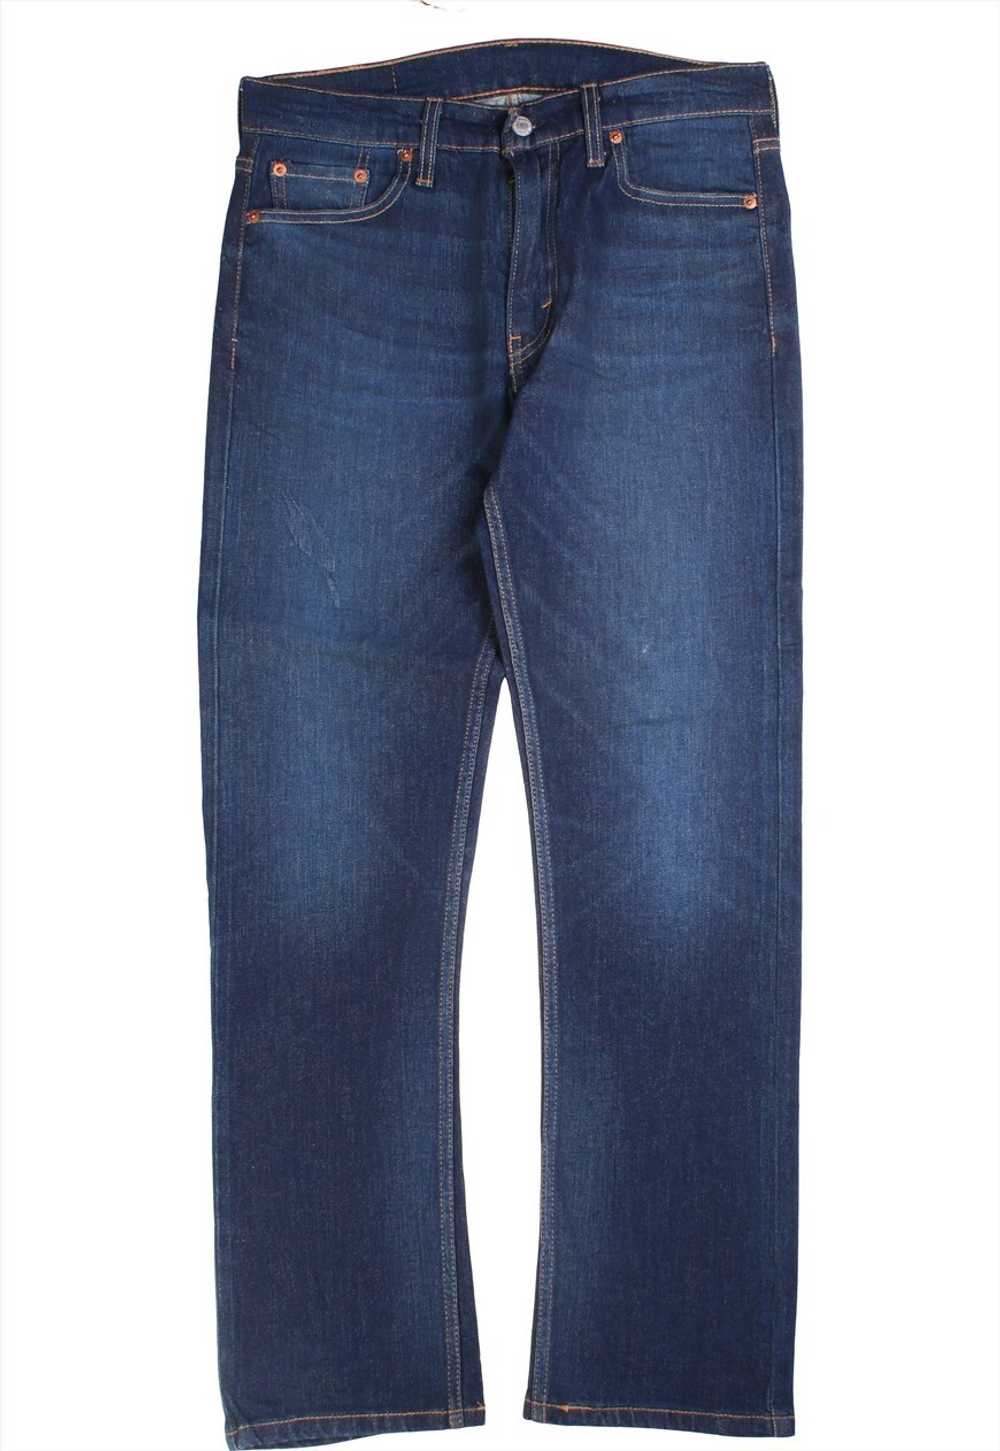 Vintage 90's Levi's Jeans / Pants 513 Denim Slim - image 2